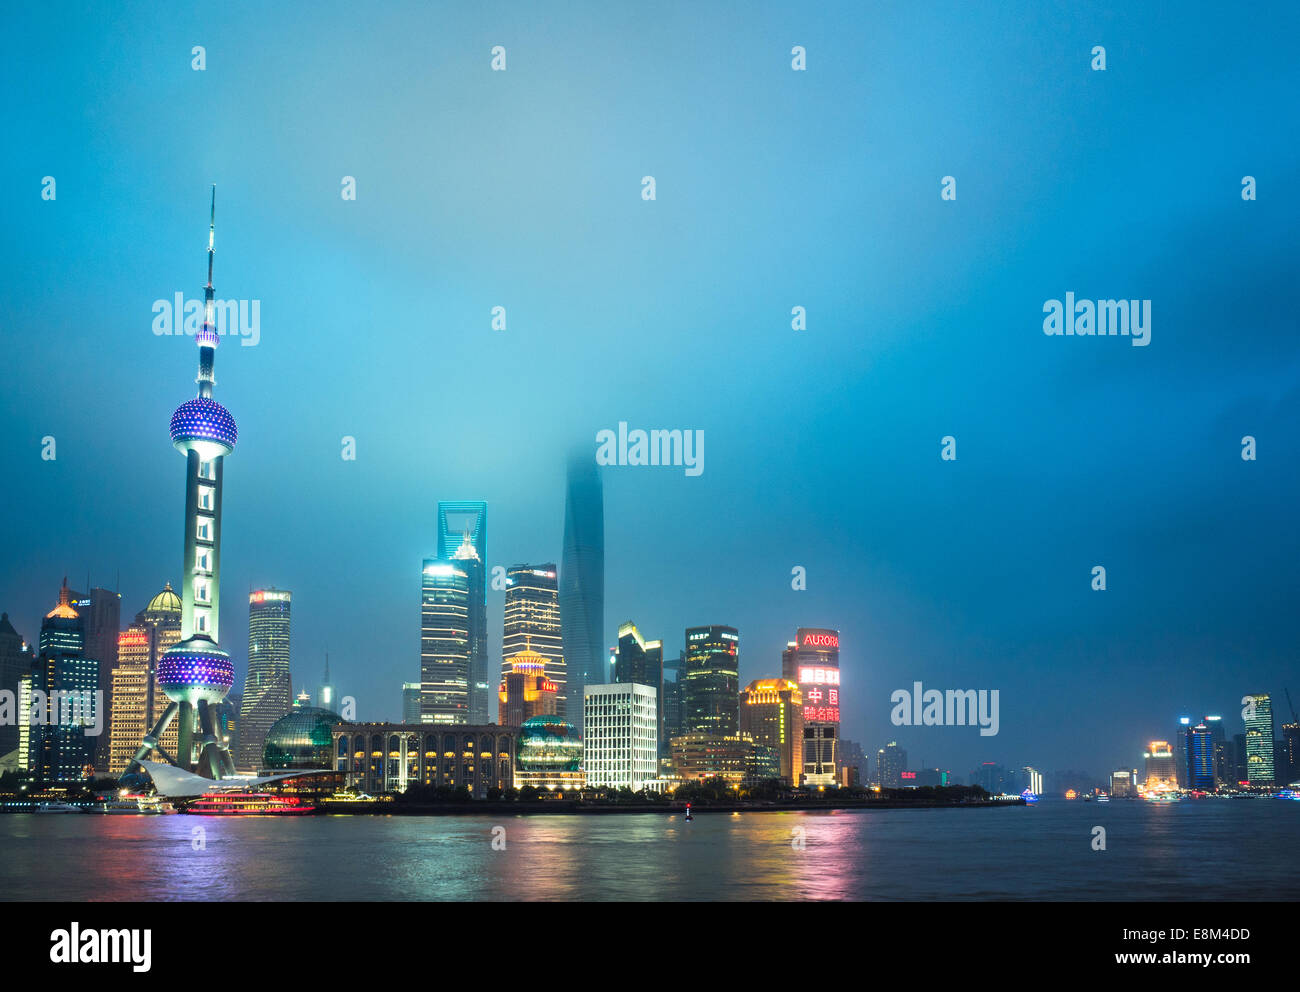 Skyline of shanghai the bund at night, landmark of China. Stock Photo